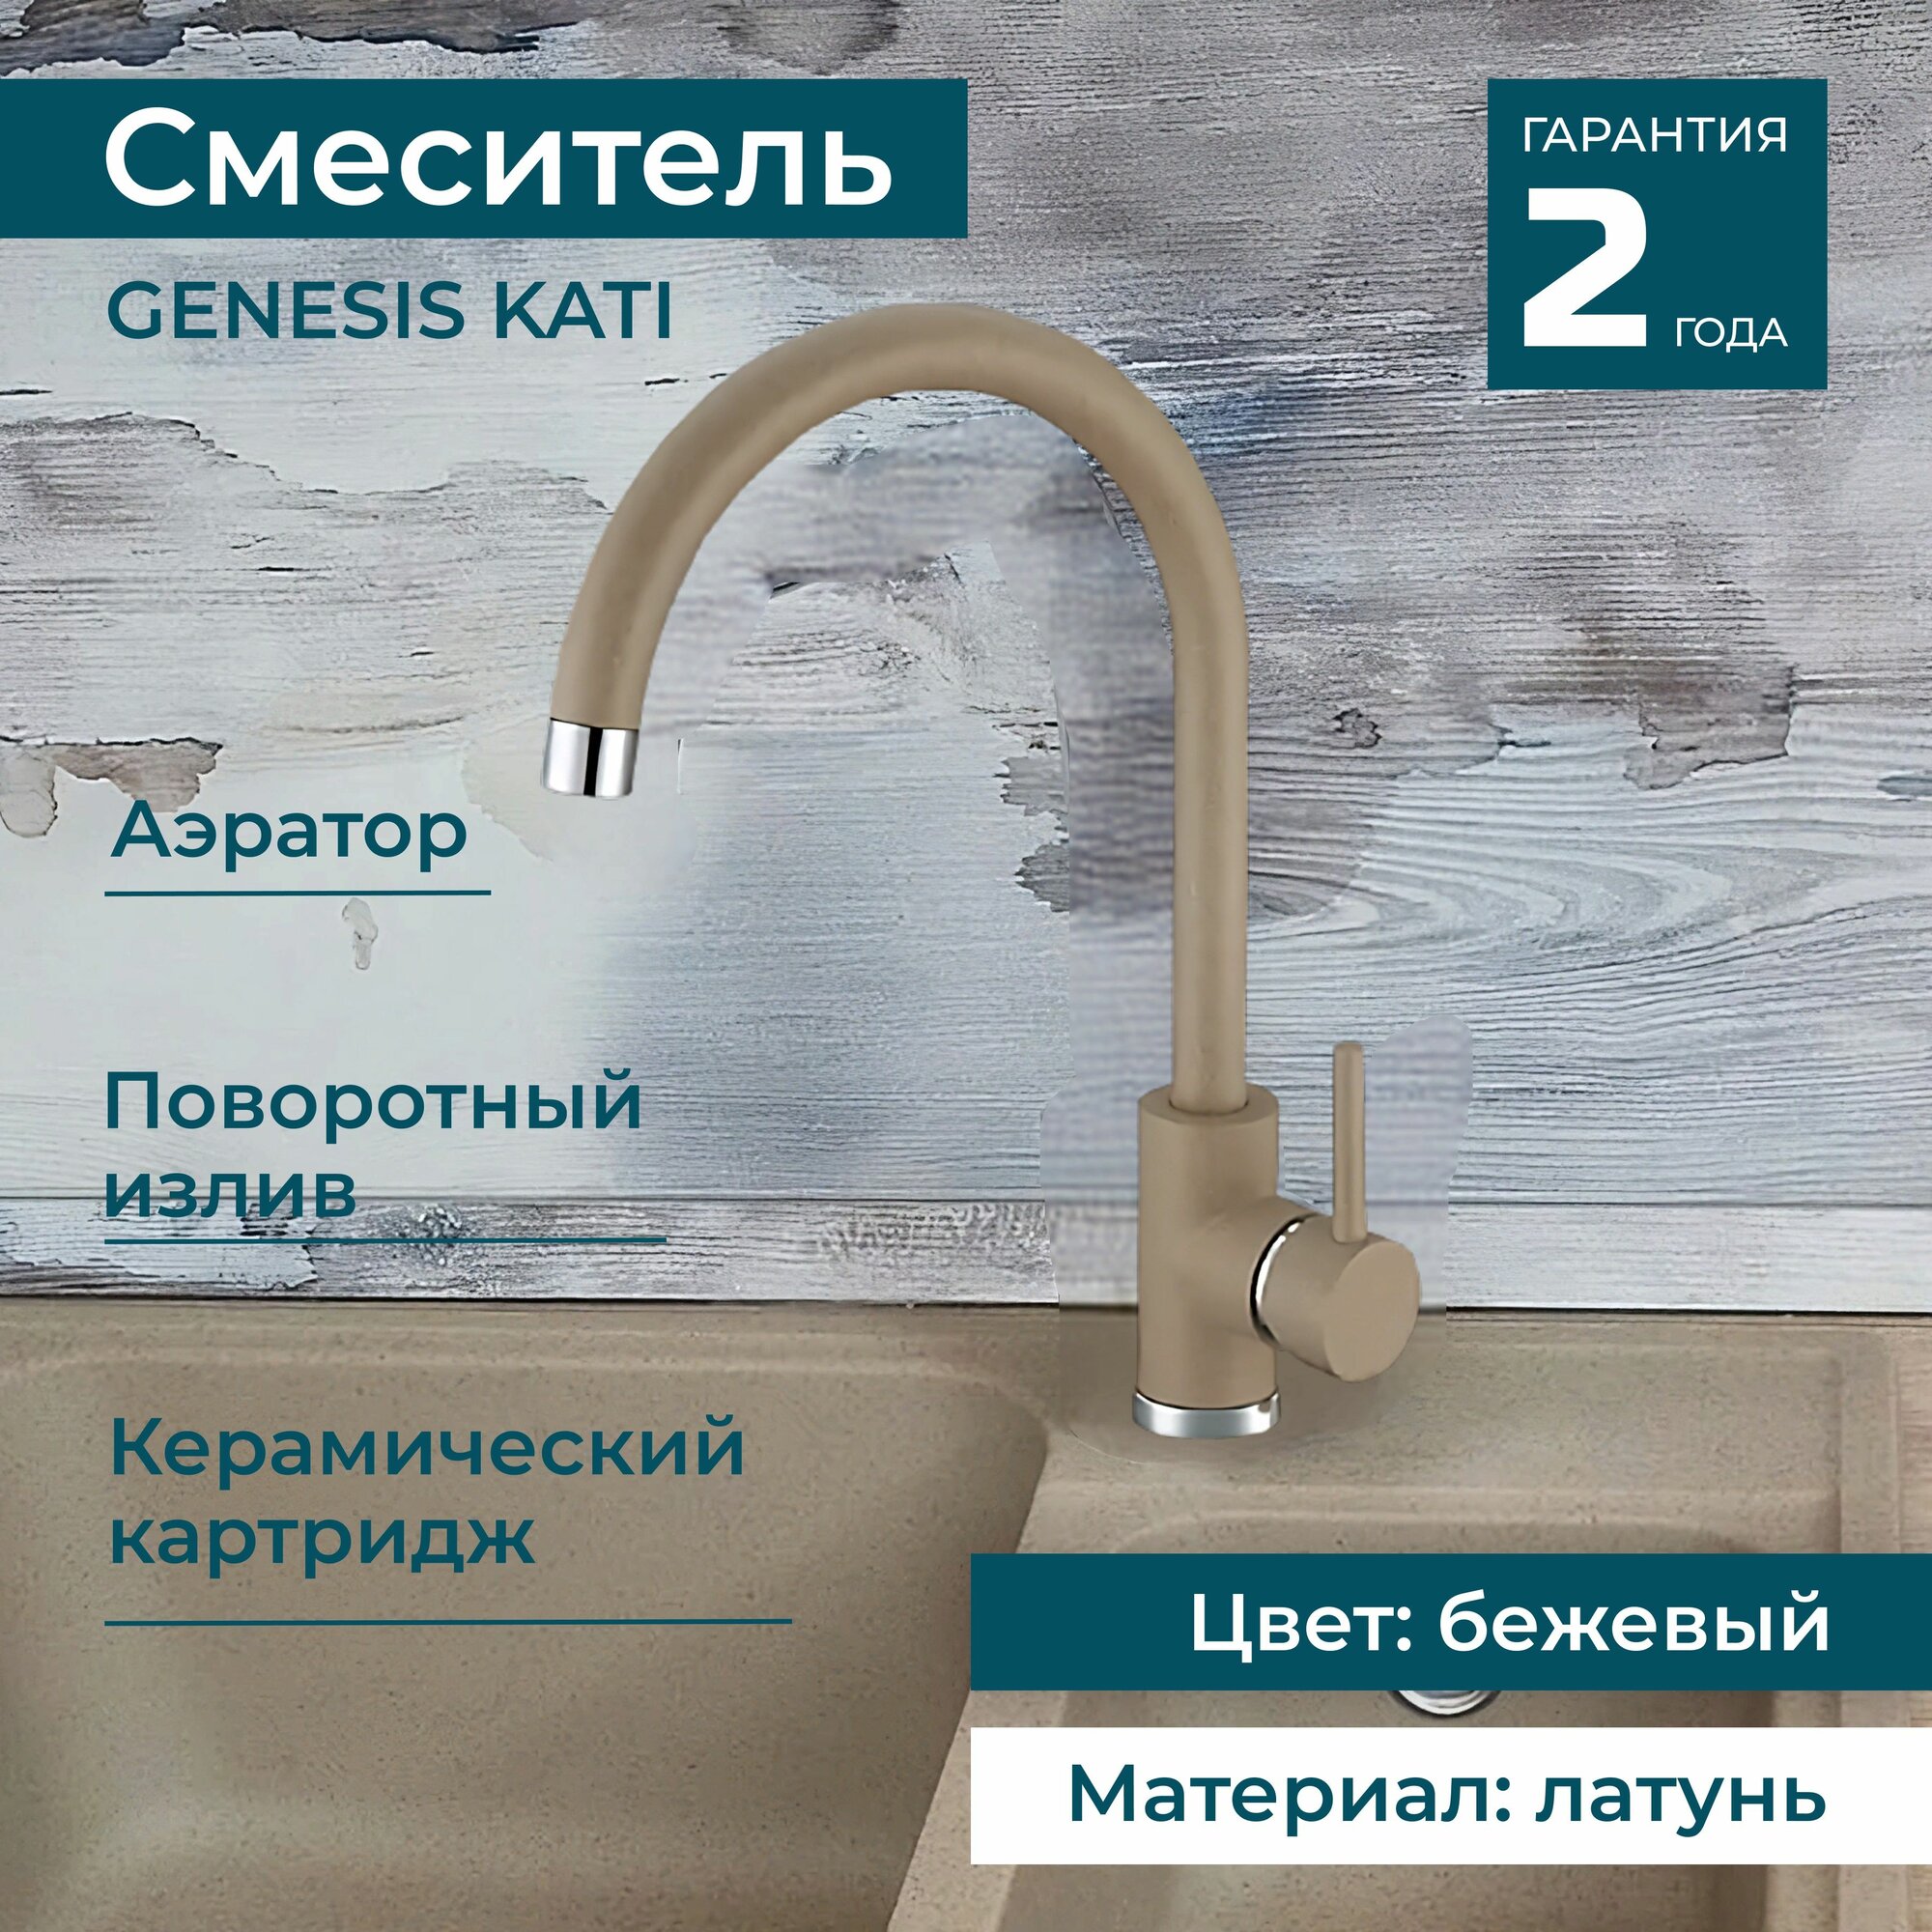 Смеситель - кран поворотный для мойки, раковины ALVEUS GENESIS KATI G55 для кухни и ванной. Латунь. Цвет бежевый